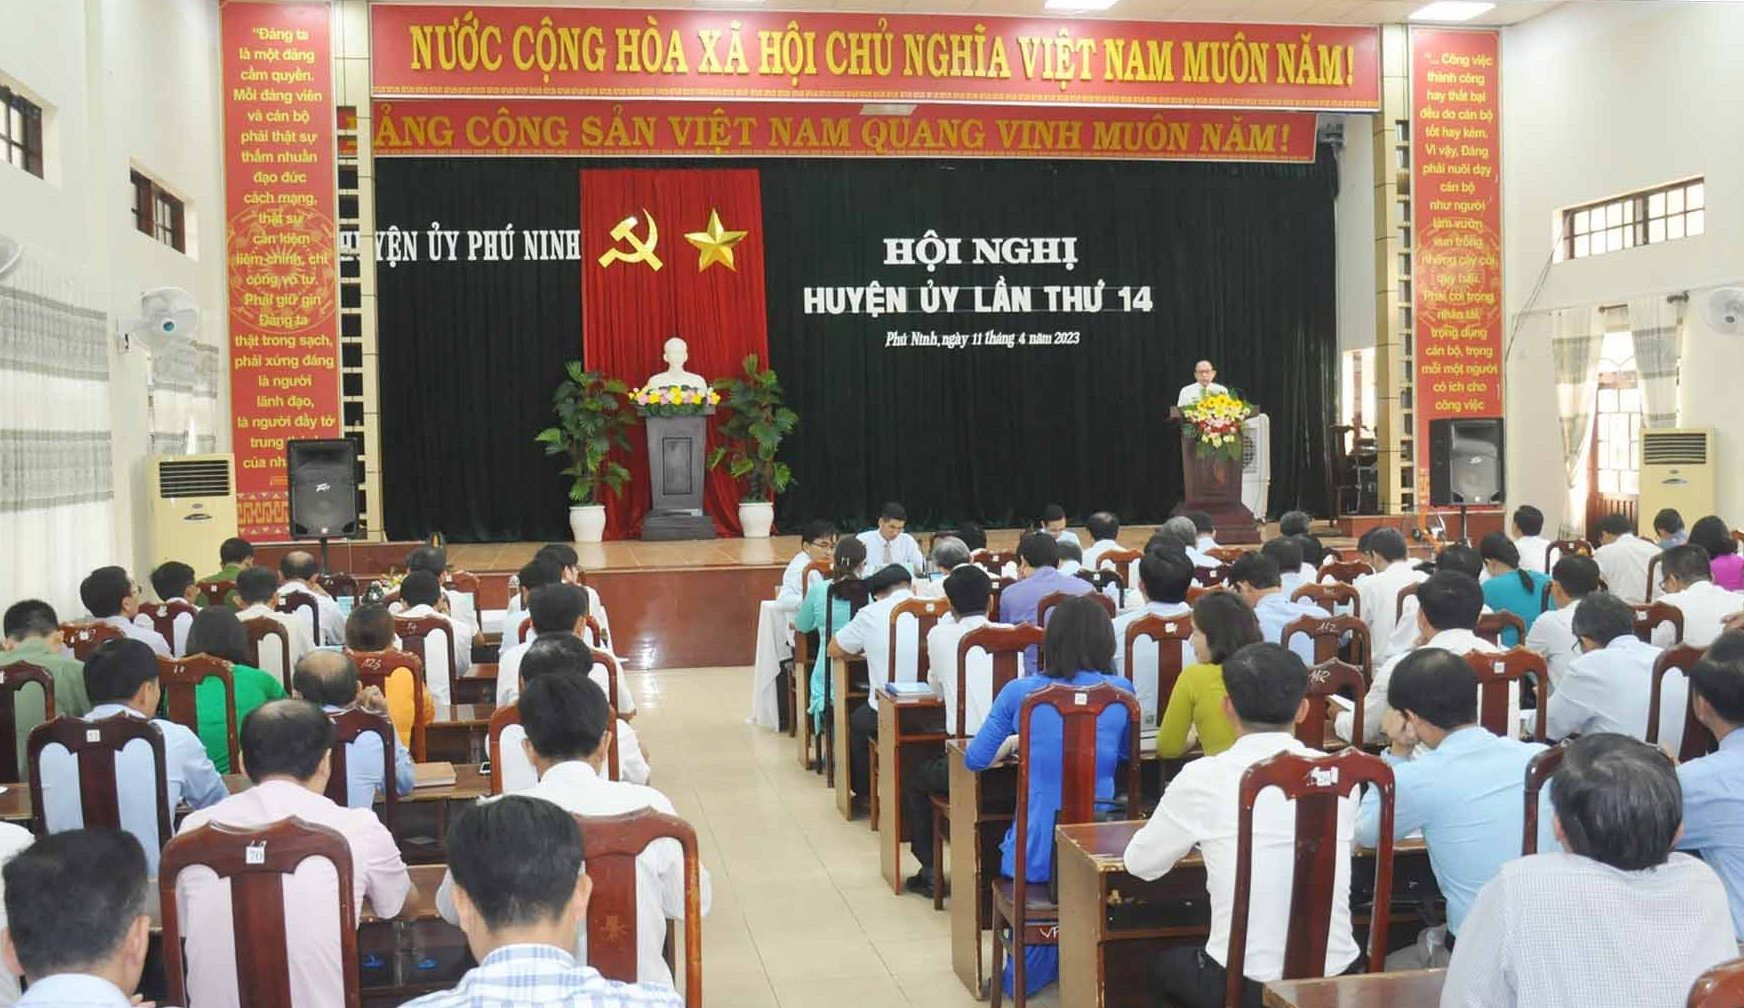 Quang cảnh hội nghị Huyện ủy Phú Ninh lần thứ 14 diễn ra sáng nay 11/4. Ảnh: N.Đ